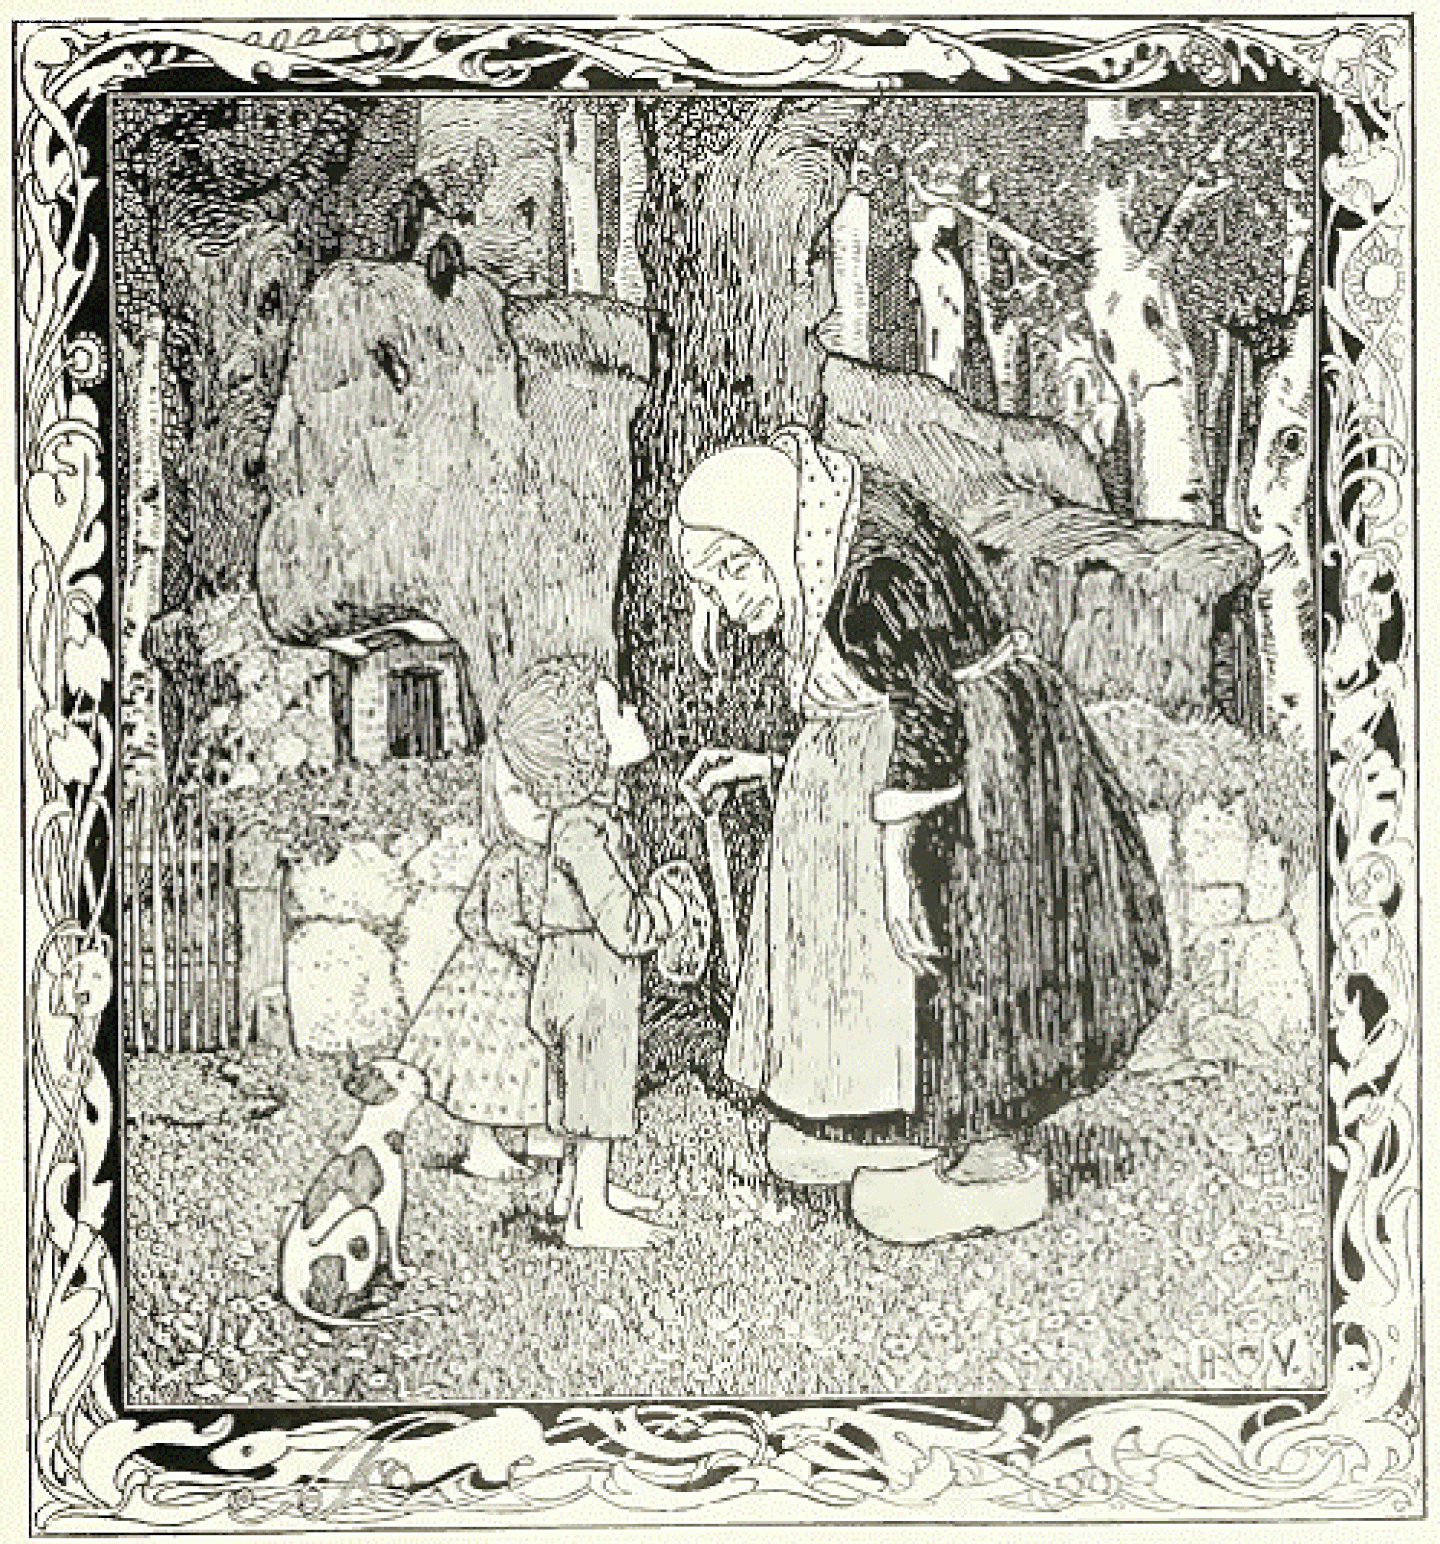 Hänsel und Gretel năm 1902 của Heinrich Vogeler